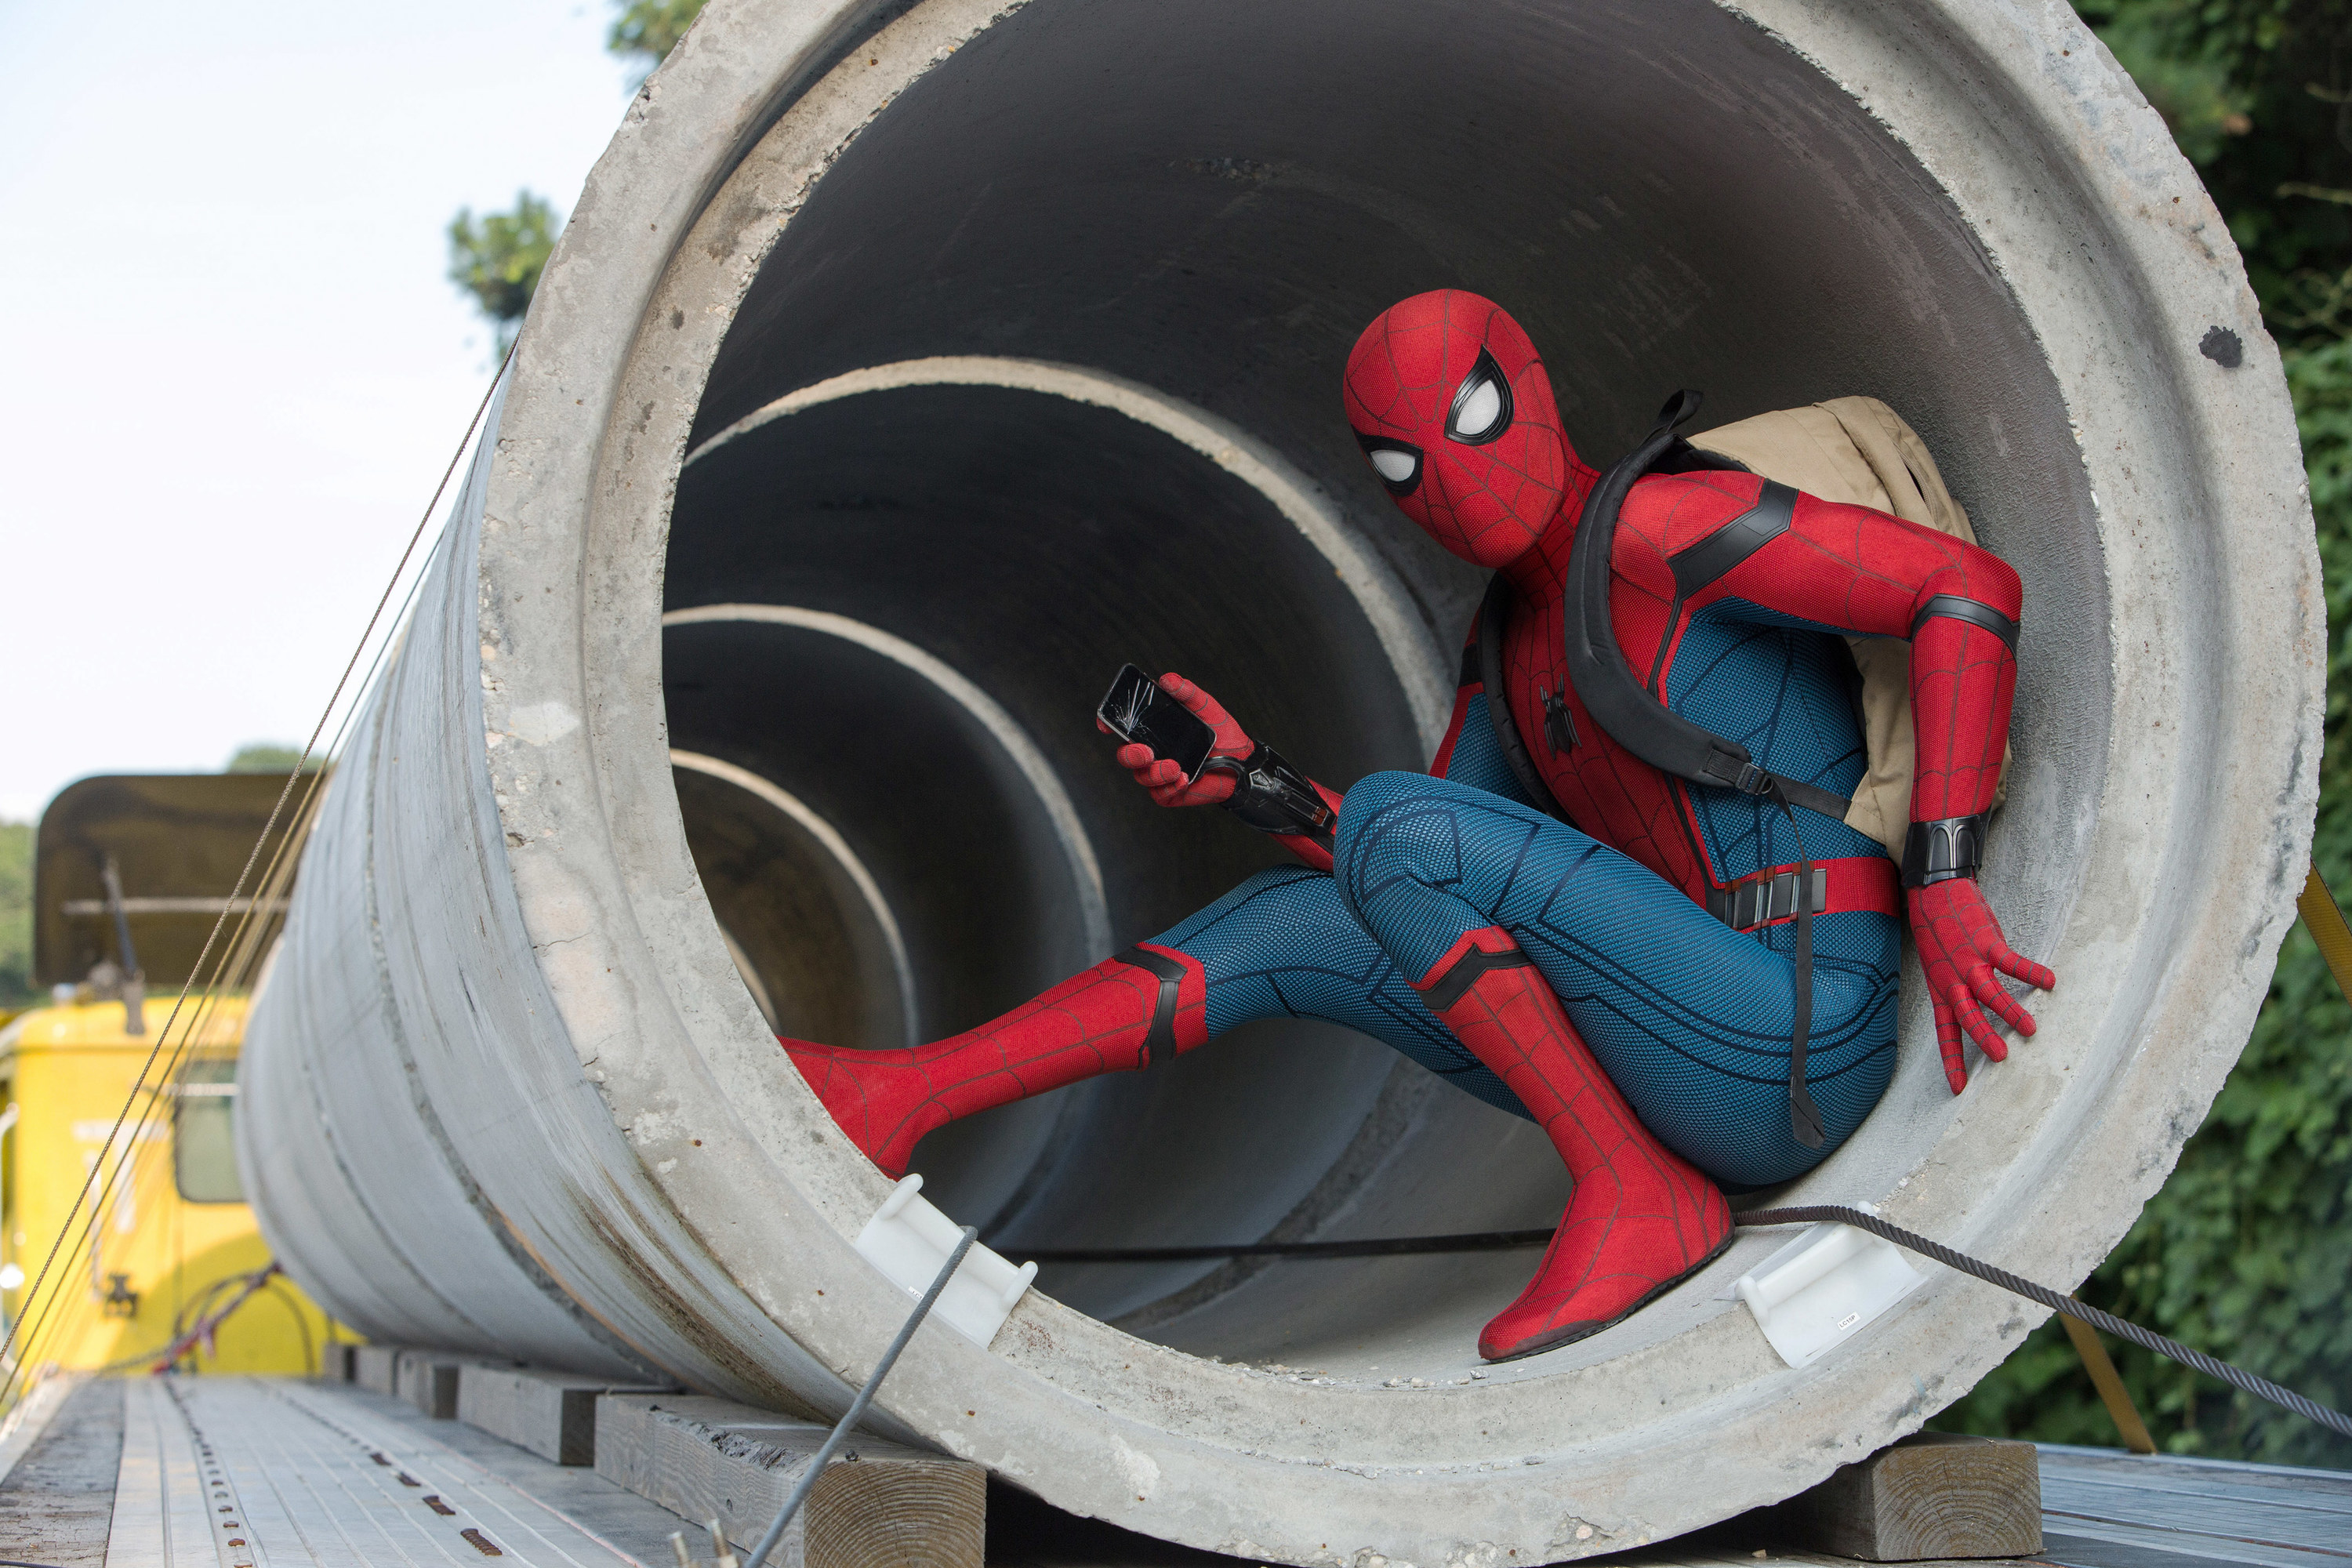 Spider-Man sitting in a cement cylinder